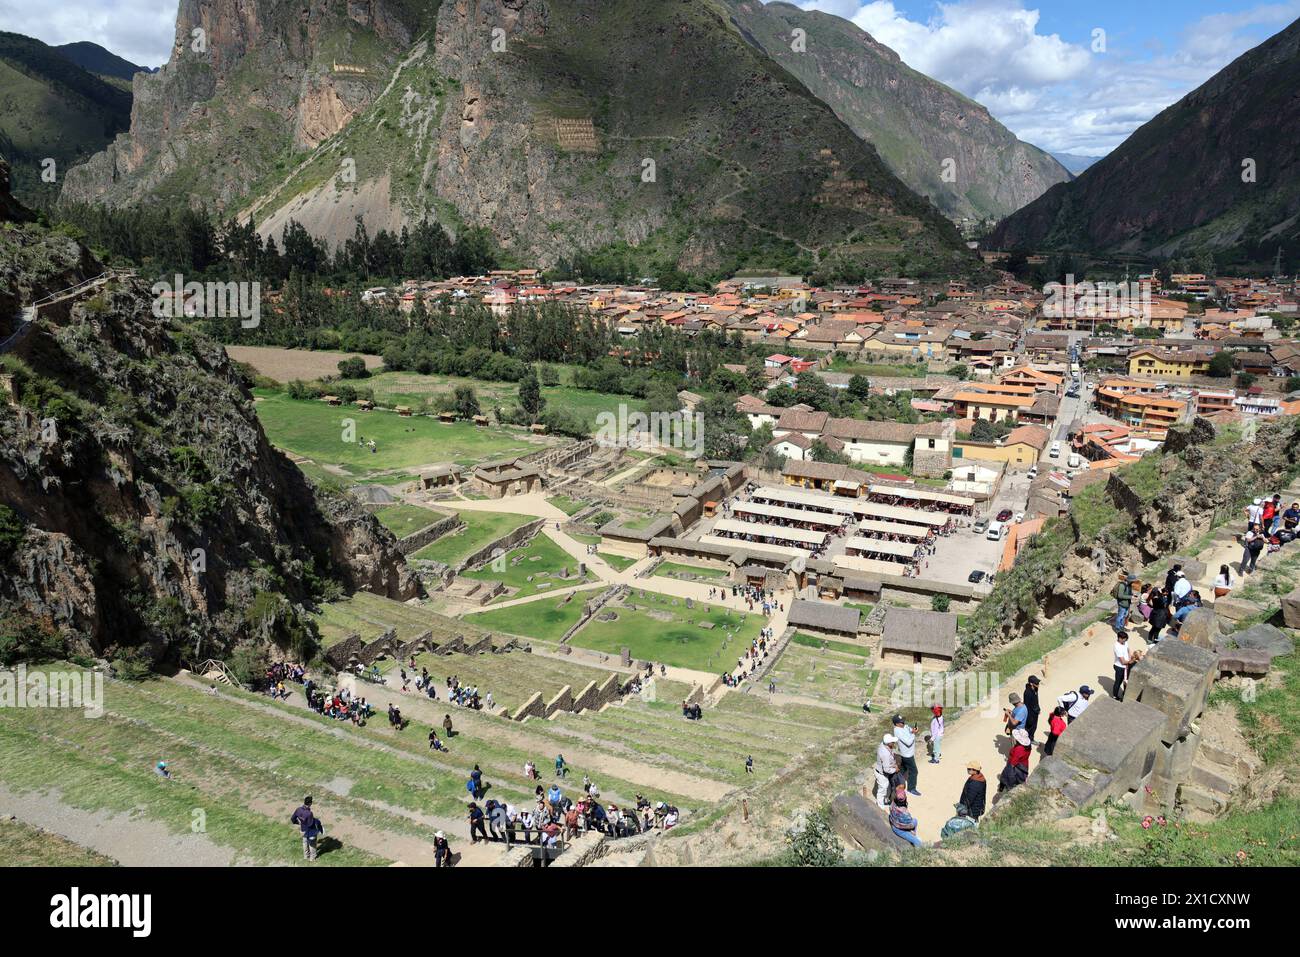 Faccia montagna - Ollantaytambo, - scene turistiche Cusco e Machu Picchu area del Perù - Perù sud-orientale vicino alla Valle Sacra delle Ande Foto Stock